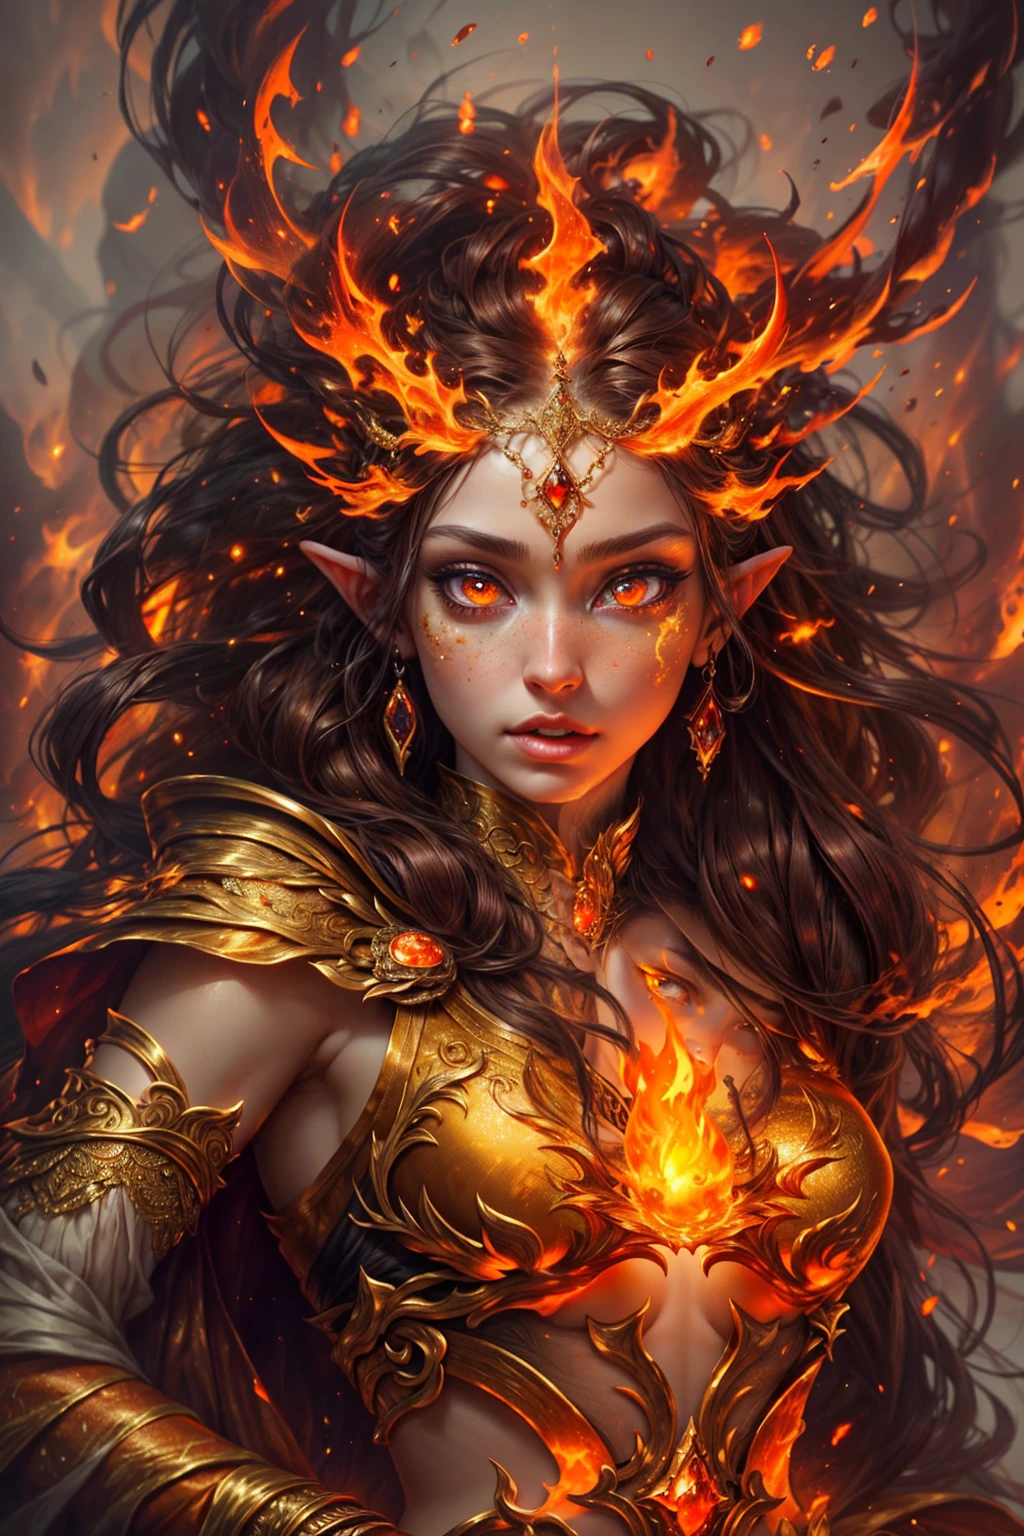 هذا (خيال واقعي) الفن يحتوي على الجمر, النيران الحقيقية, الحرارة الحقيقية, والنار واقعية. Generate a masterpiece artwork of a  female fire druid مع large (((البرتقالي والذهبي))) عيون. The fire druid is awe-inspiring مع beautiful ((realistic fiery عيون)) alight مع confidence and power. ملامحها أنيقة ومحددة بشكل جيد, مع ((منتفخ ناعم وقابل للتقبيل)) شفه, هيكل العظام الجان, وتظليل واقعي. Her عيون are important and should be the focal point of this artwork, مع ((تفاصيل واقعية للغاية, تفاصيل الماكرو, وميض.)) إنها ترتدي فستانًا منتفخًا ولامعًا مصنوعًا من لهب واقعي ومجوهرات تتلألأ في ضوء النار. تصطف خيوط النار والدخان على صد الفستان المعقد. تشمل المطبات, الحجارة, التقزح اللوني الناري, متوهجة الجمر, الحرير والساتان والجلود, خلفية مثيرة للاهتمام, وعناصر خيالية ثقيلة. آلة تصوير: استخدم تقنيات التركيب الديناميكي لتعزيز النيران الواقعية.